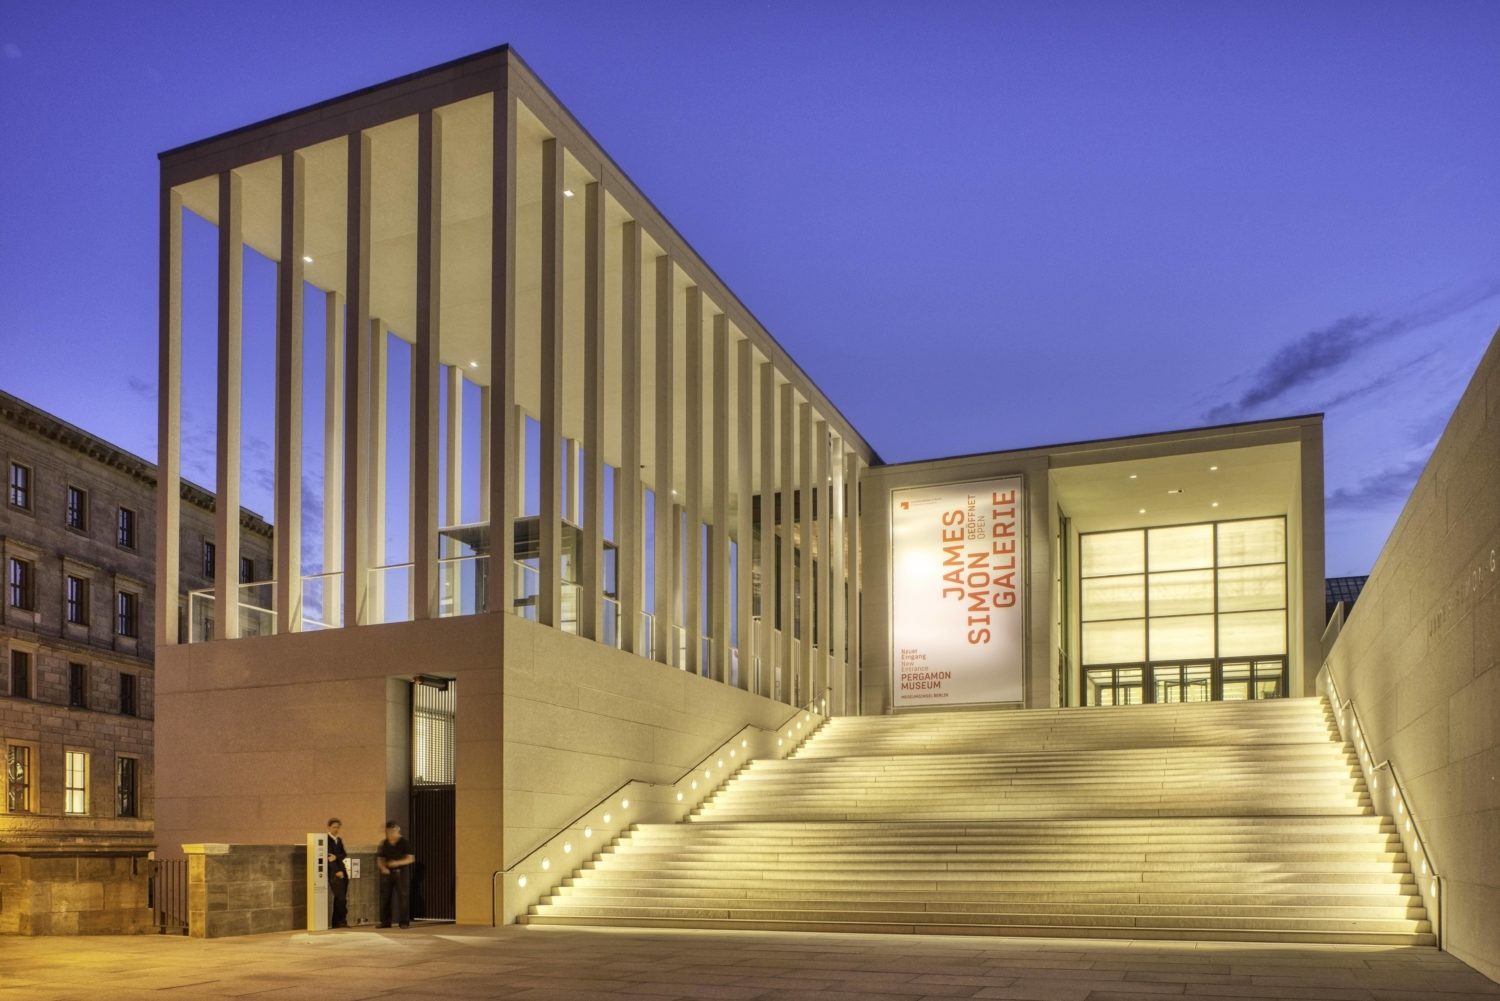 Stararchitekten in Berlin: Die James-Simon-Galerie auf der Museumsinsel wurde von David Chipperfield entworfen. Foto: Imago/Imagebroker